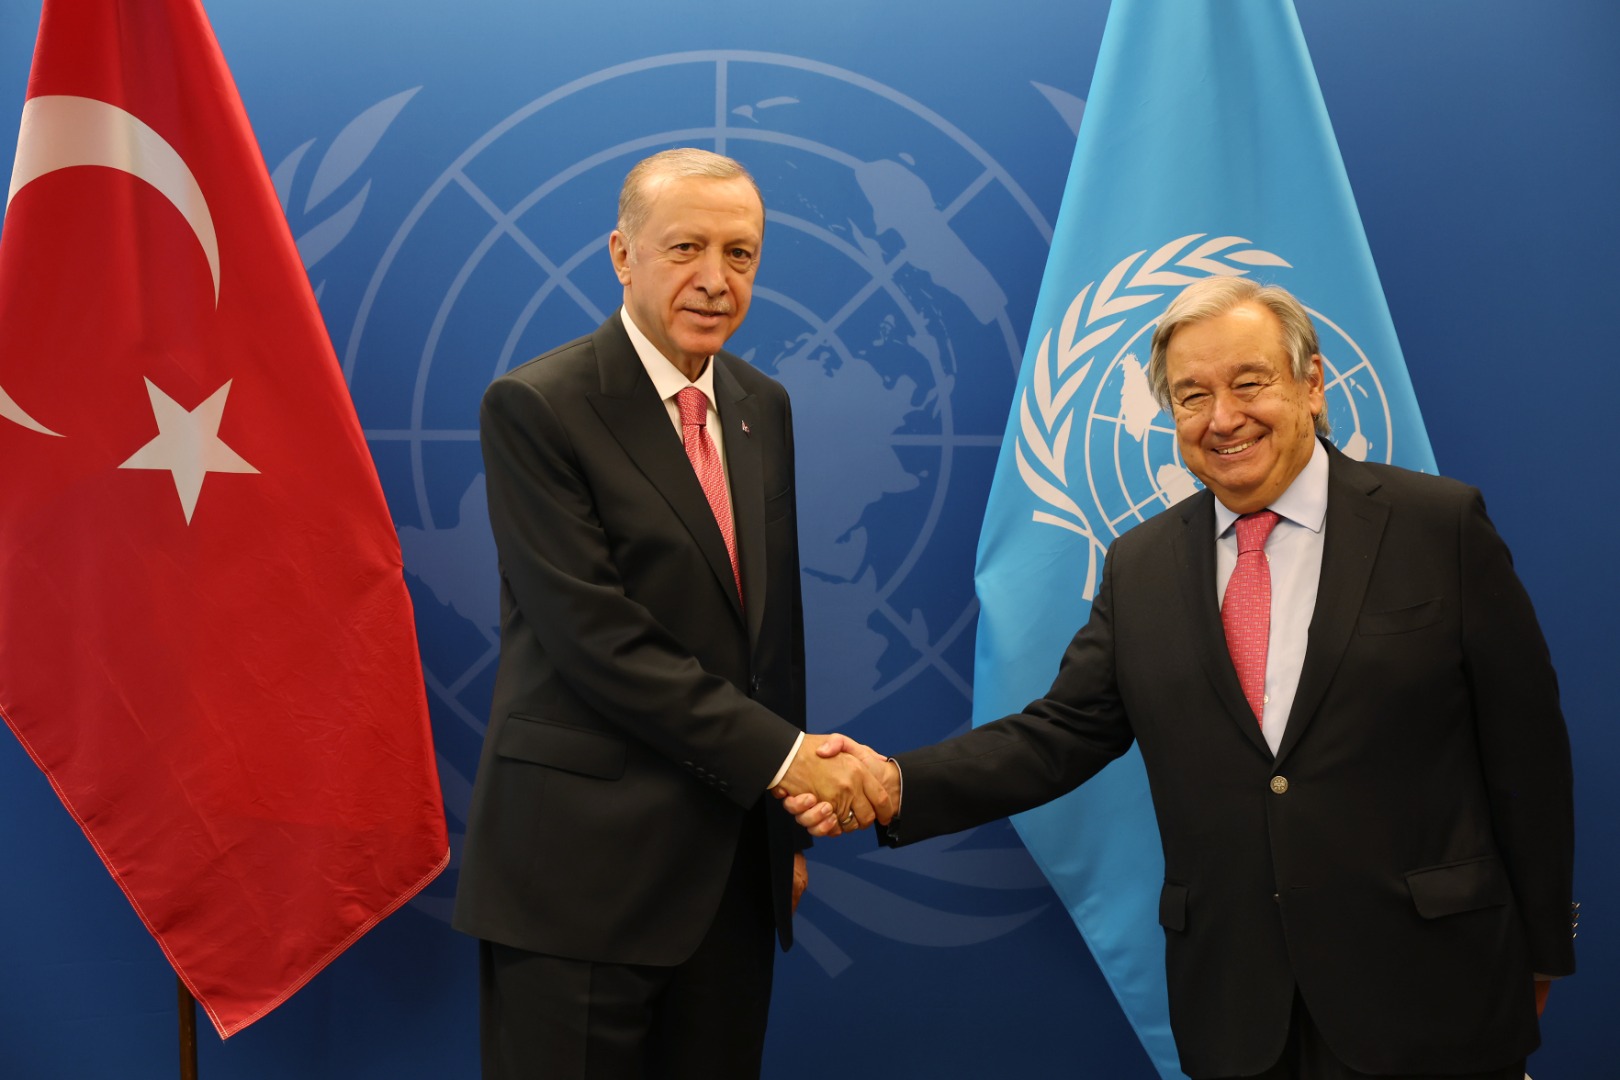 Cumhurbaşkanı Erdoğan BM Genel Sekreteri Guterres ile görüştü